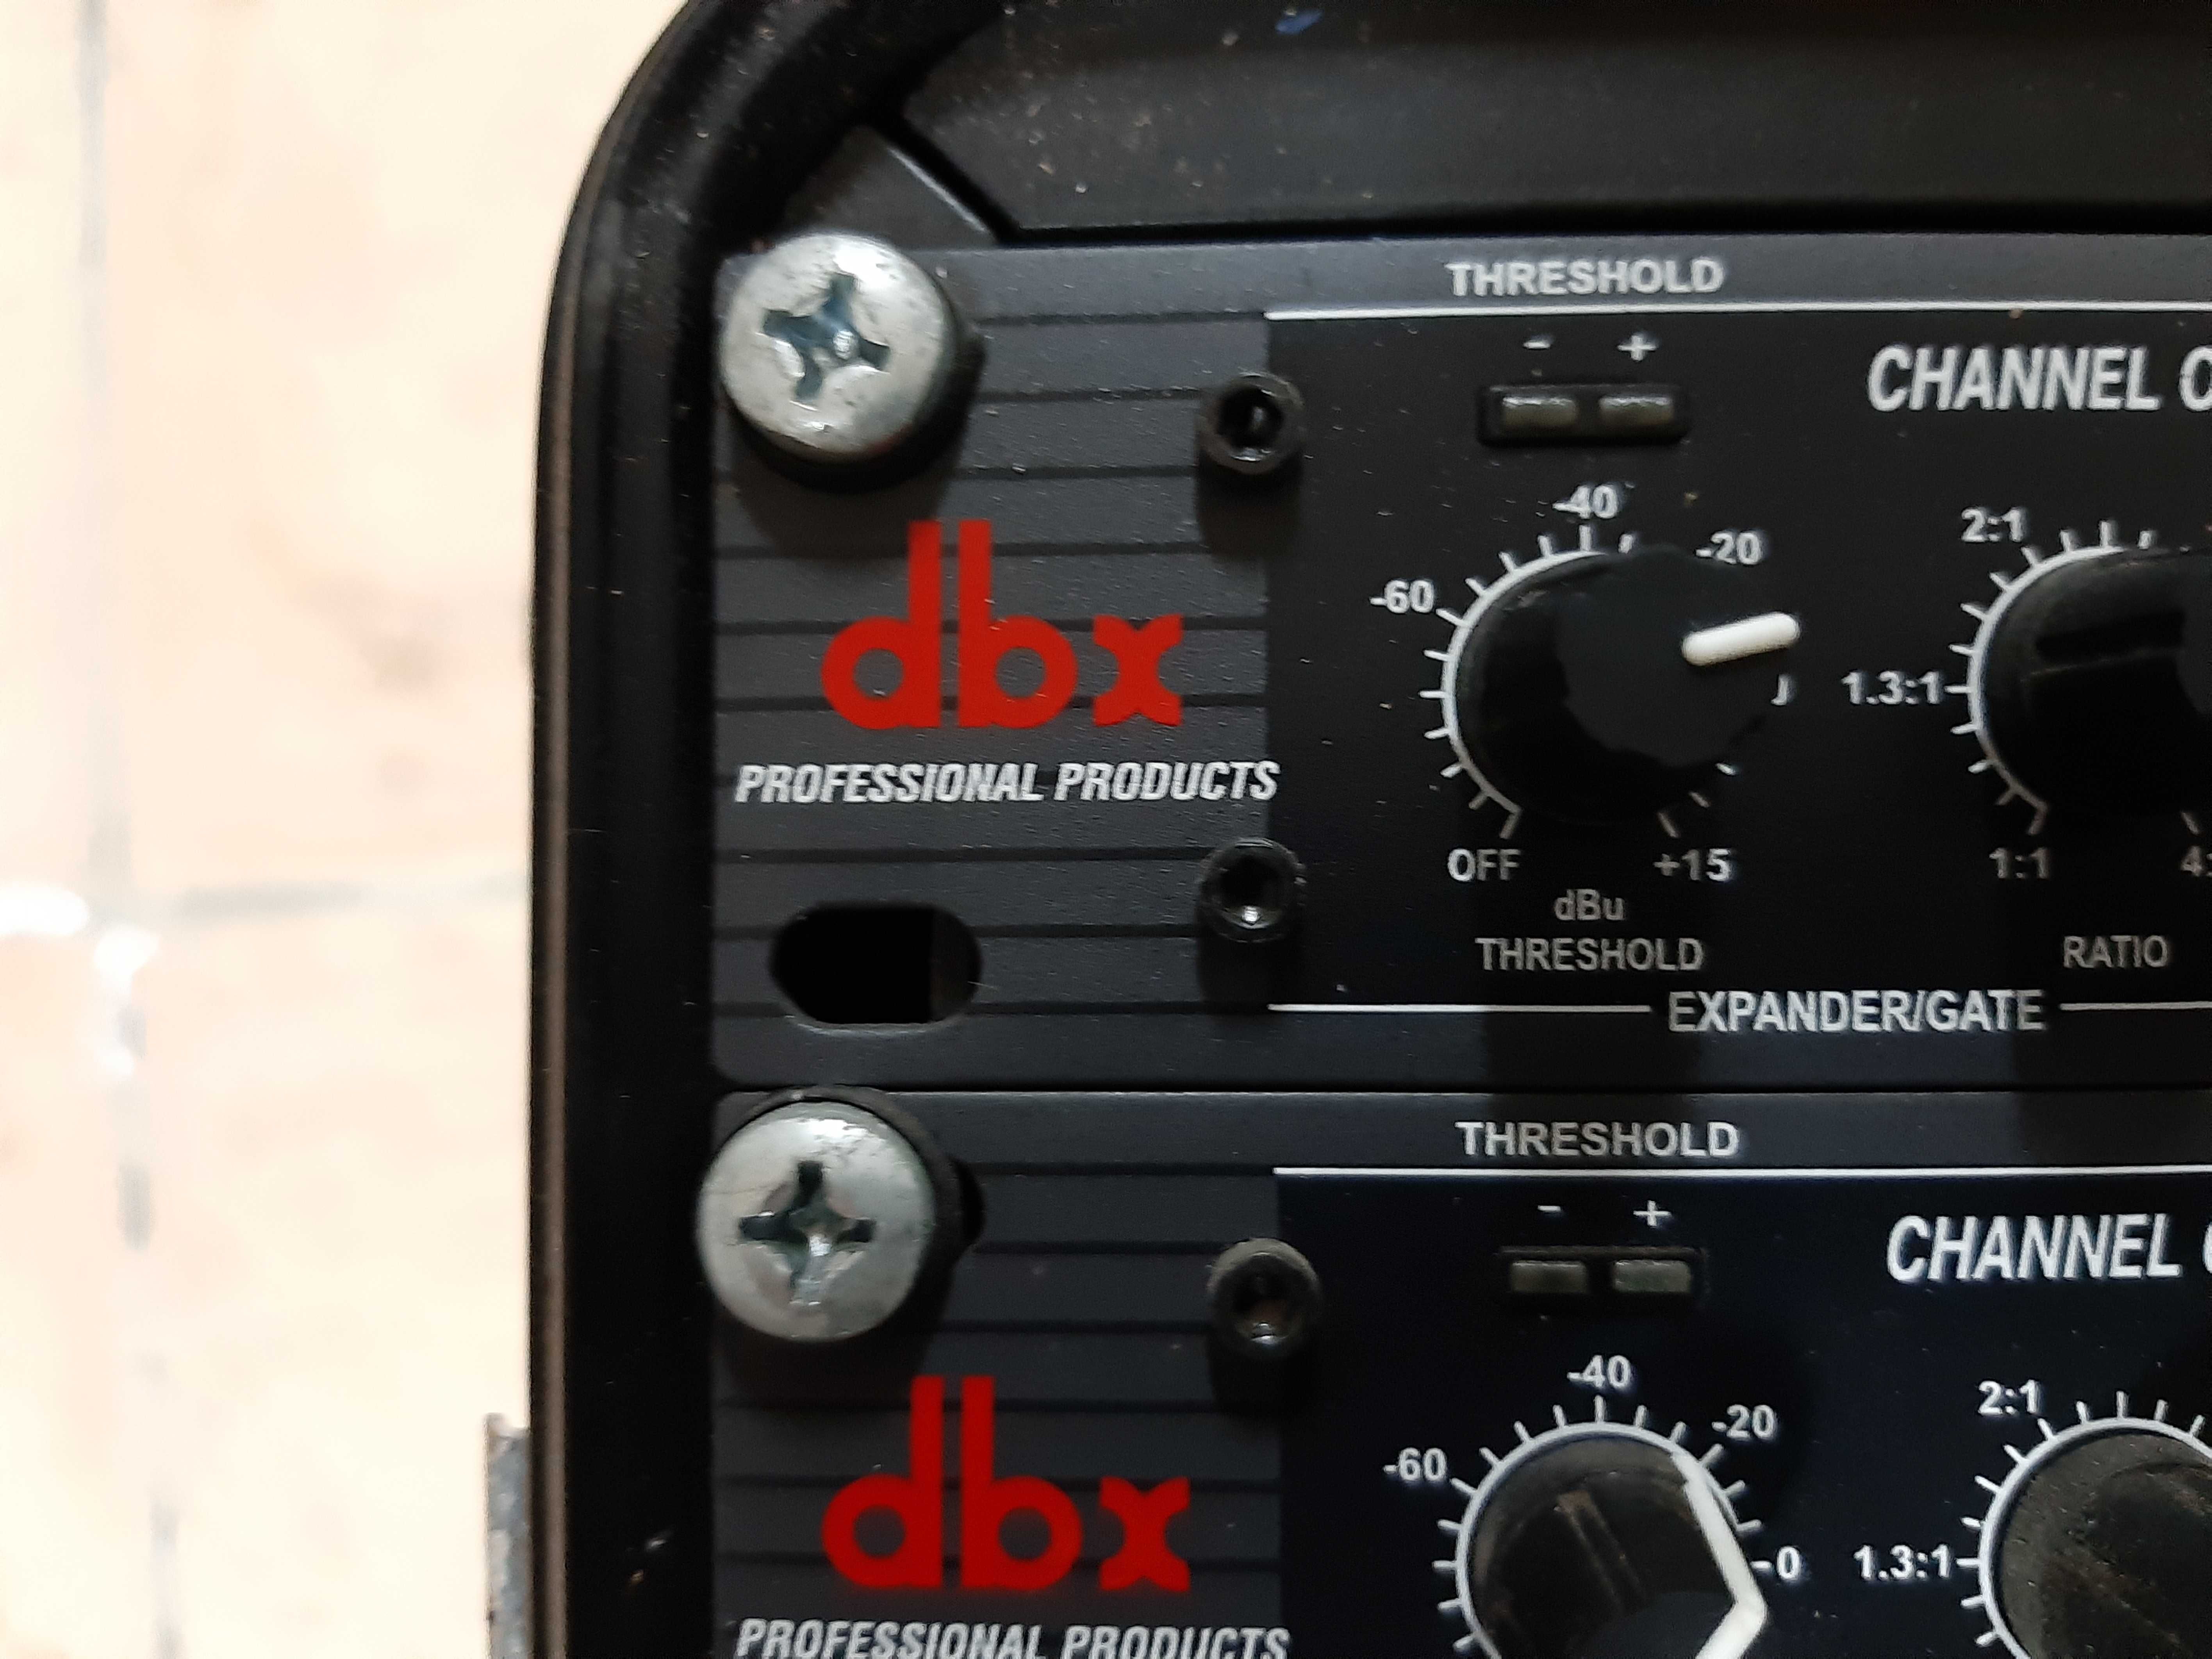 Rack c/ compressor dbx - equalizador Carvin - Compressor Bheringer